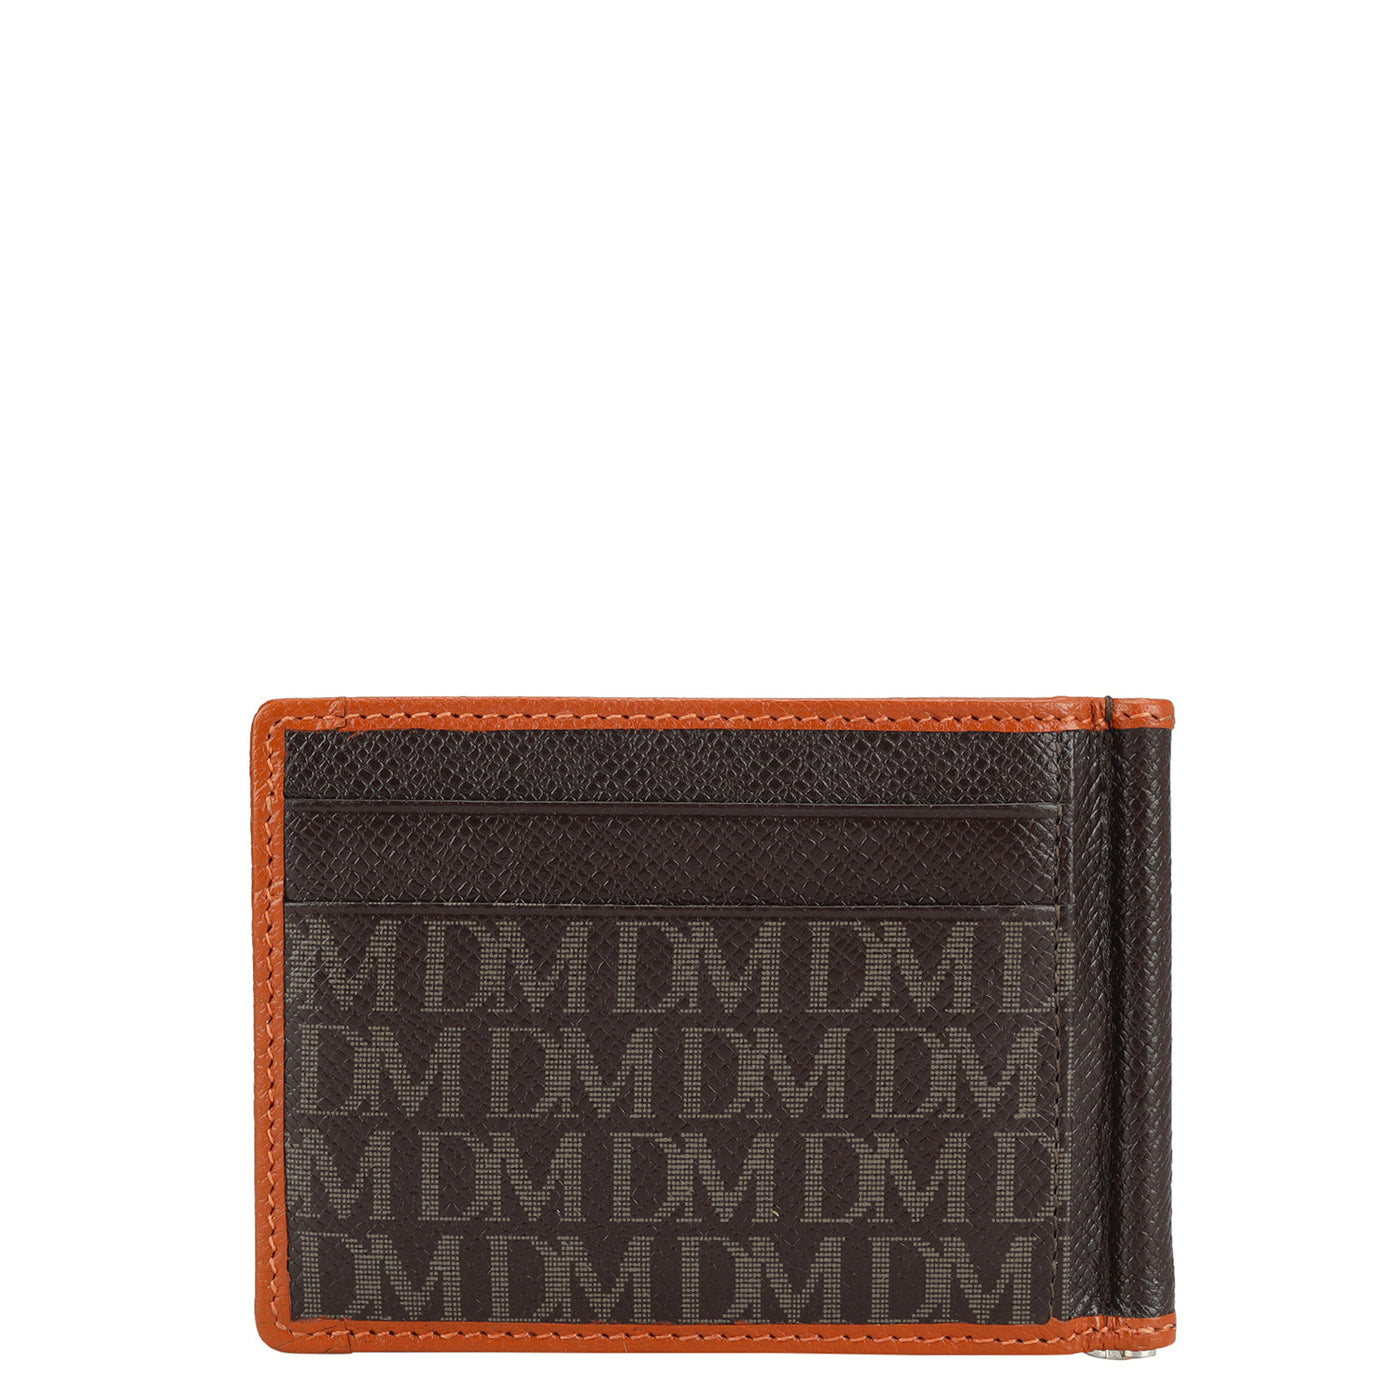 Monogram Leather Money Clip - Chocolate